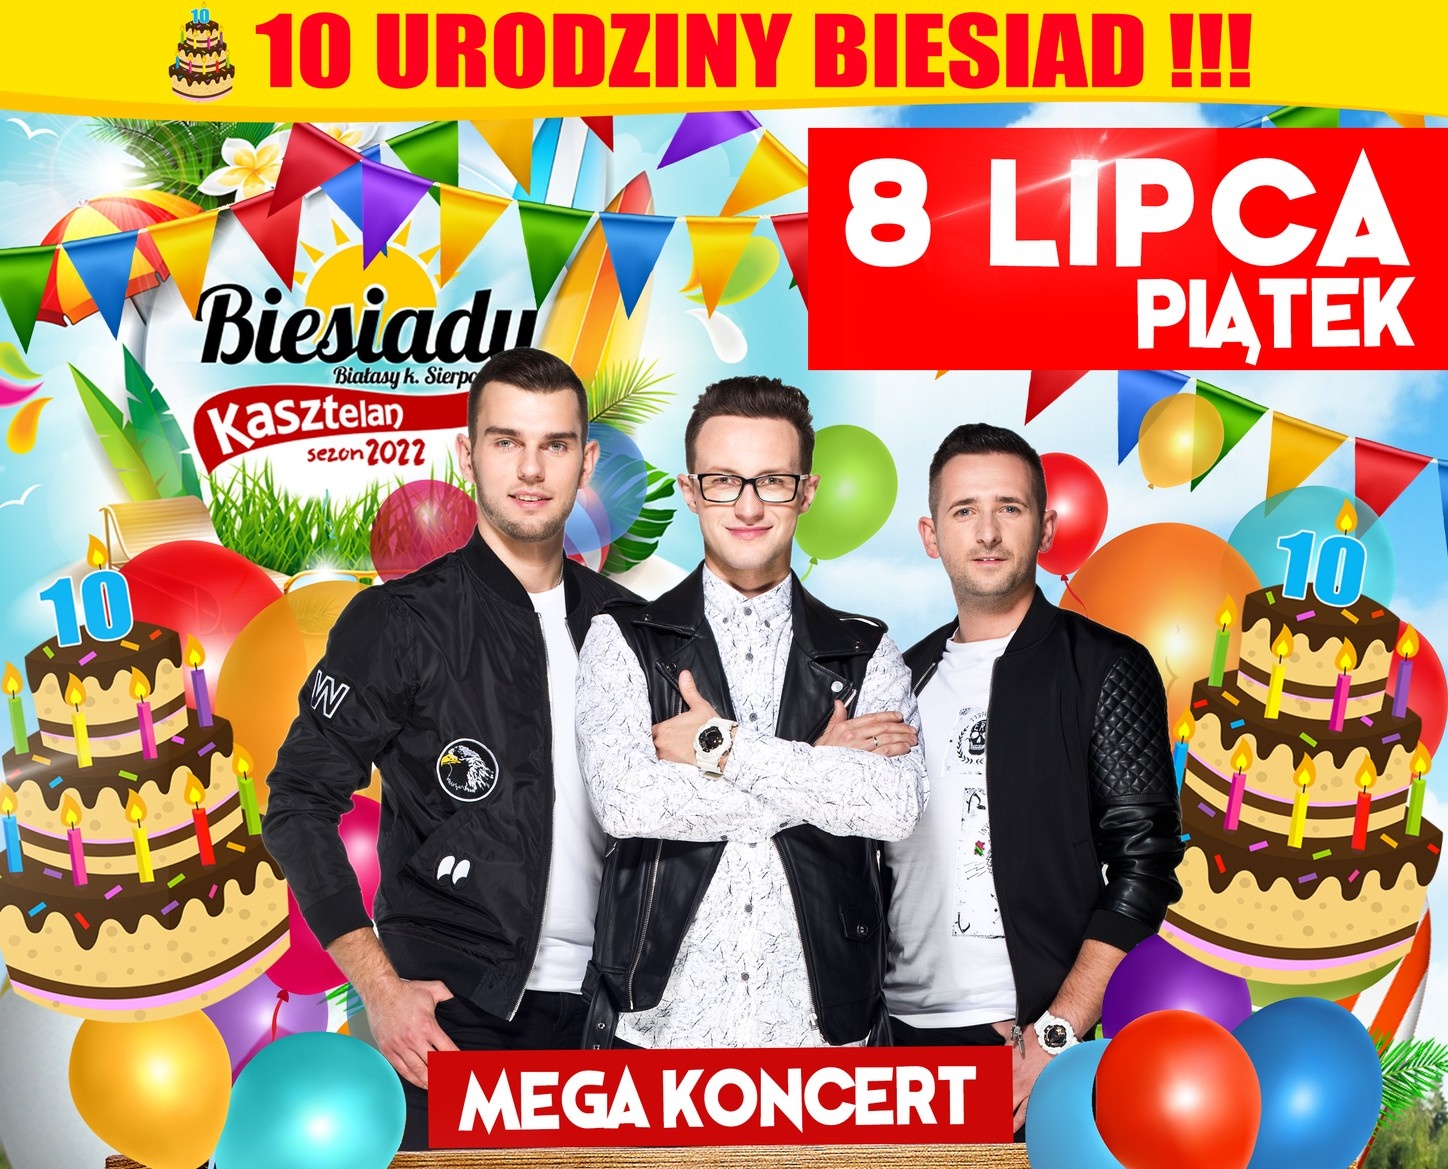 10-urodziny Biesiad Kasztelan! Koncert gwiazd disco polo - zespołu Plabyoys już 8 lipca! Bilety!